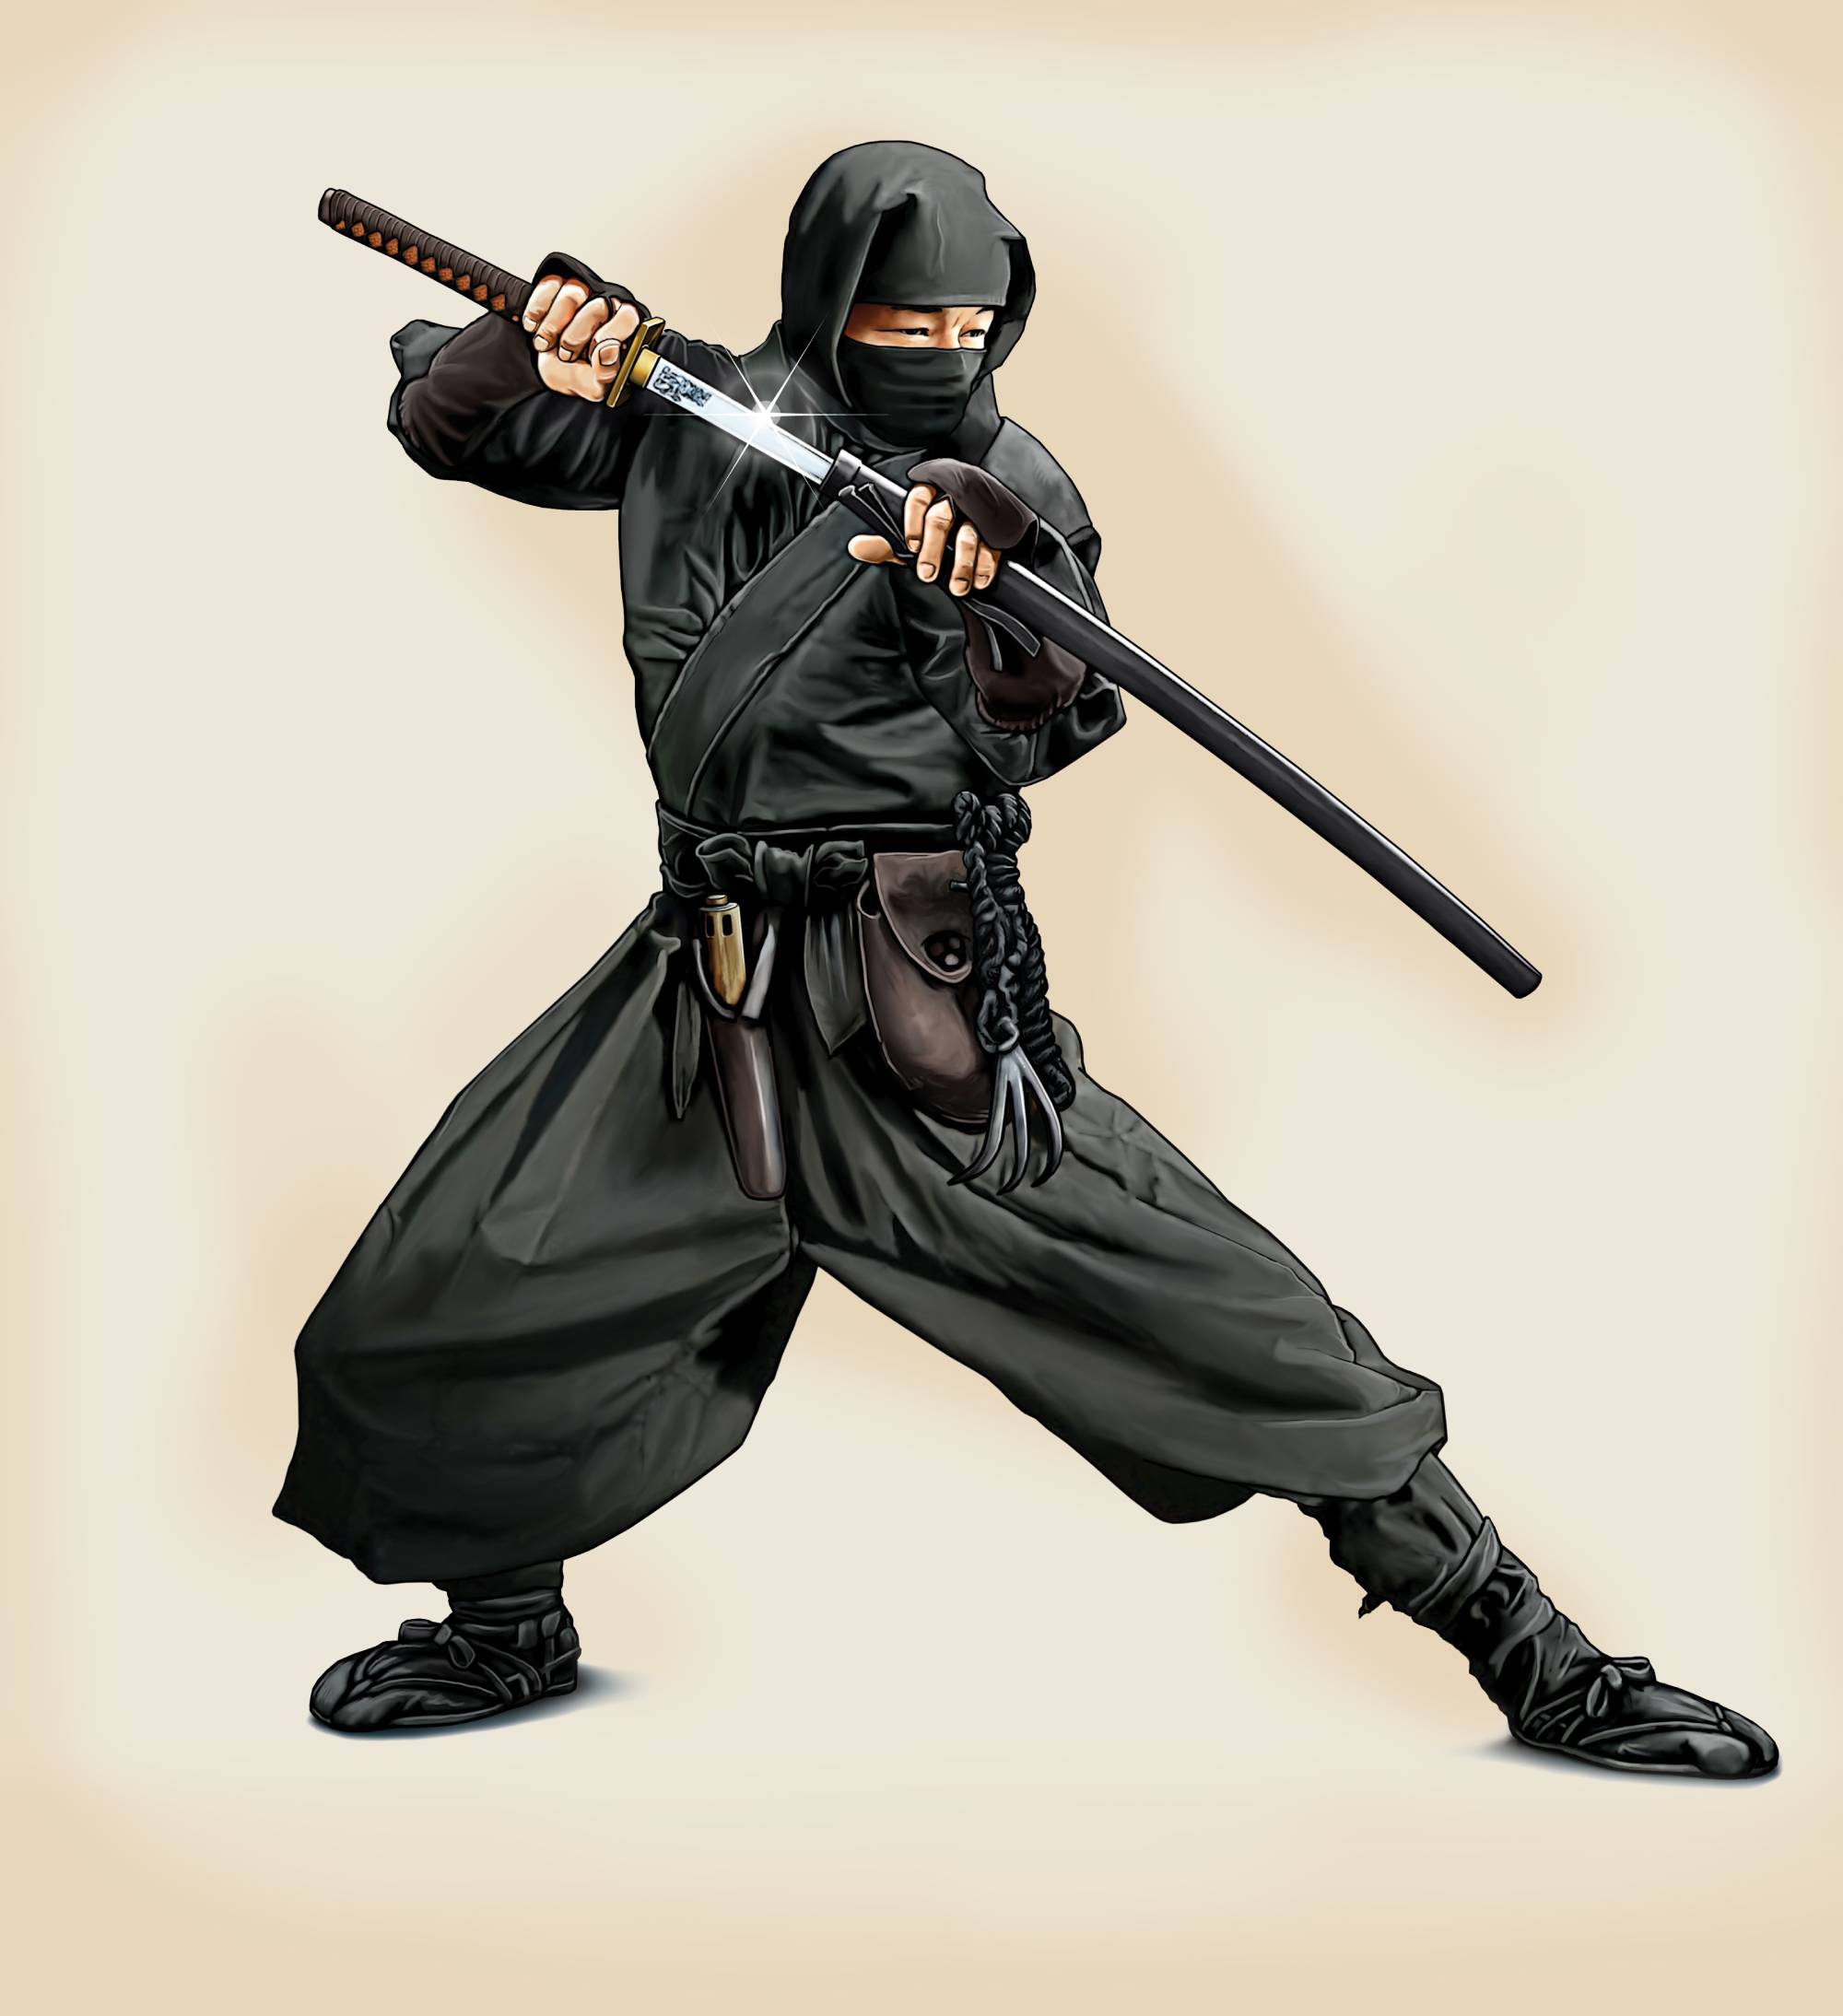 Let's Become Ninjas